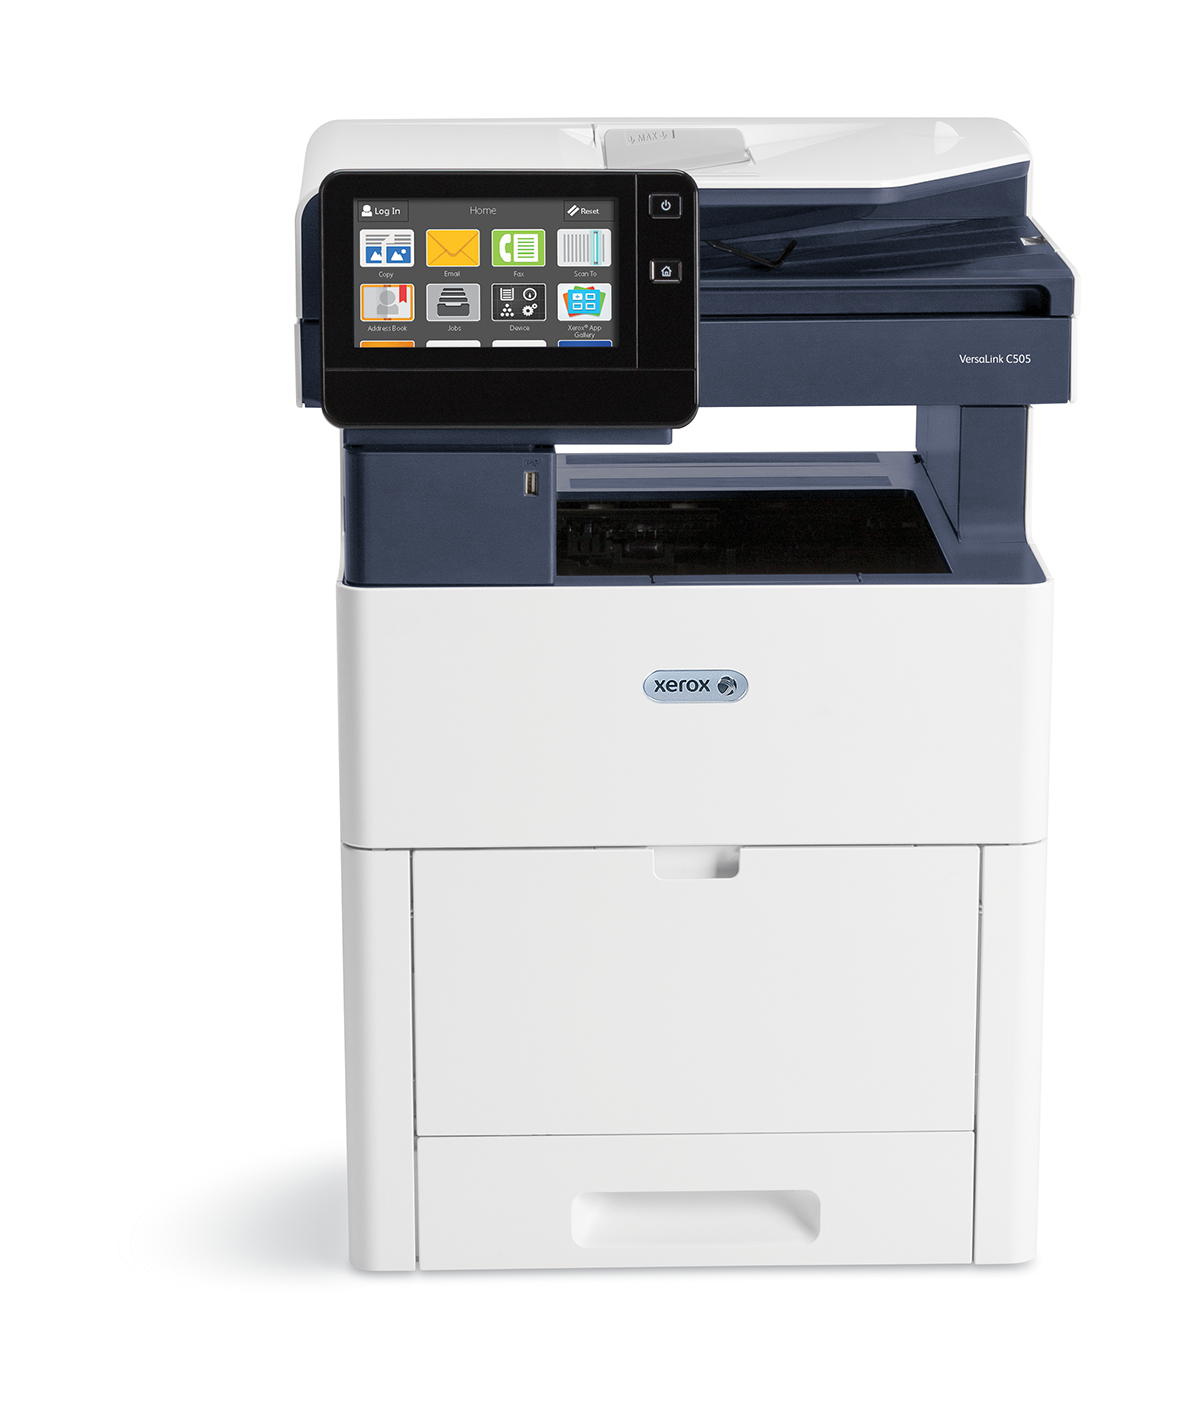 Impresora multifunción en color VersaLink C505 - Xerox